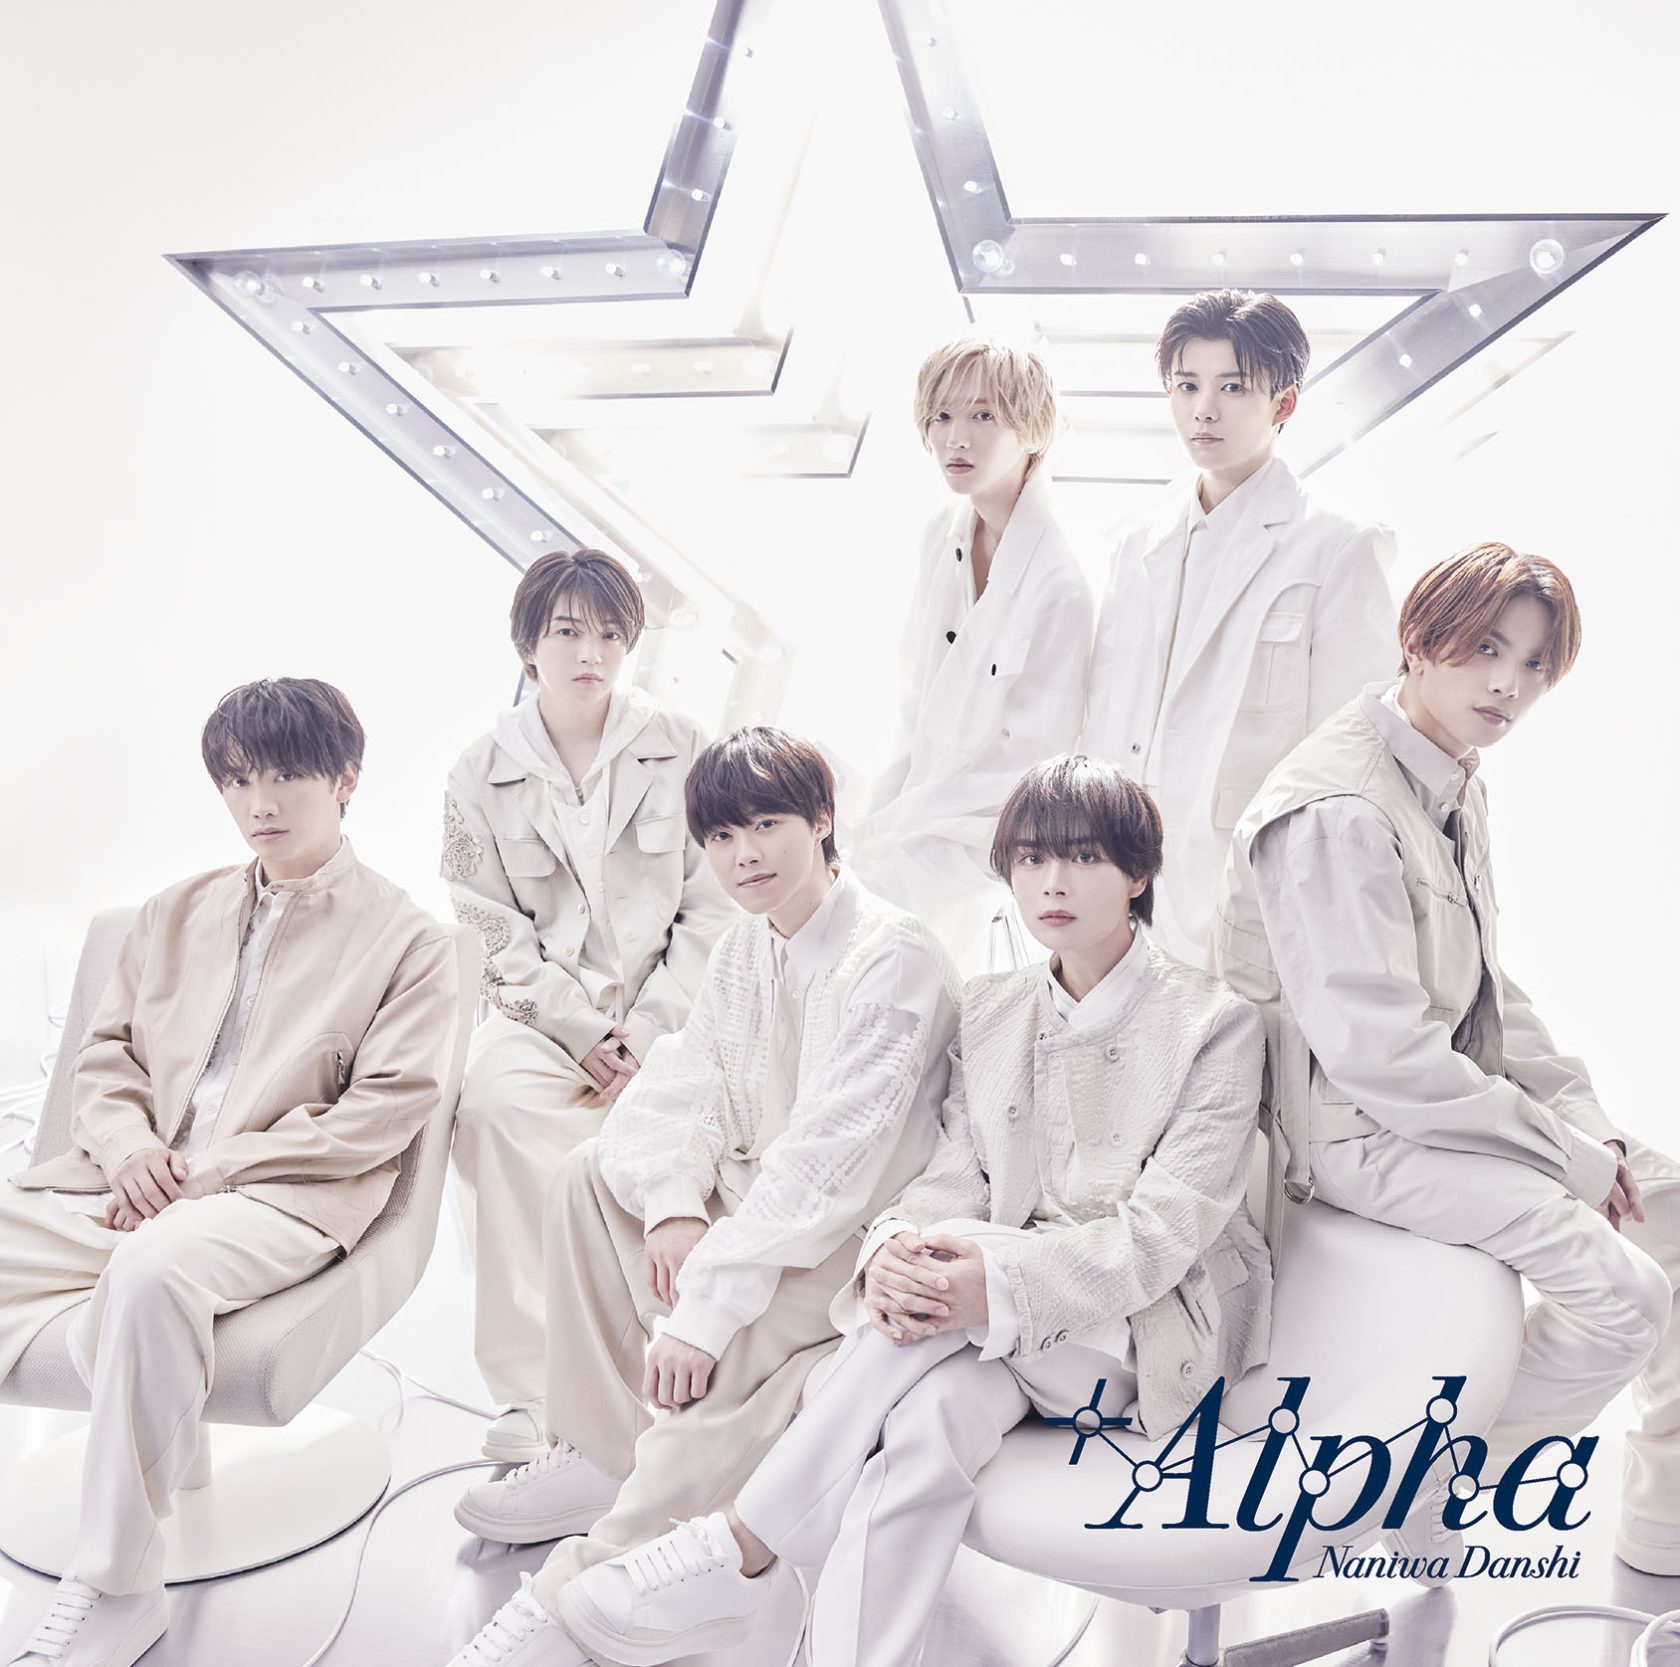 なにわ男子、3rdアルバム「+Alpha」オリコン週間アルバムランキング初登場1位!3作連続の3作目